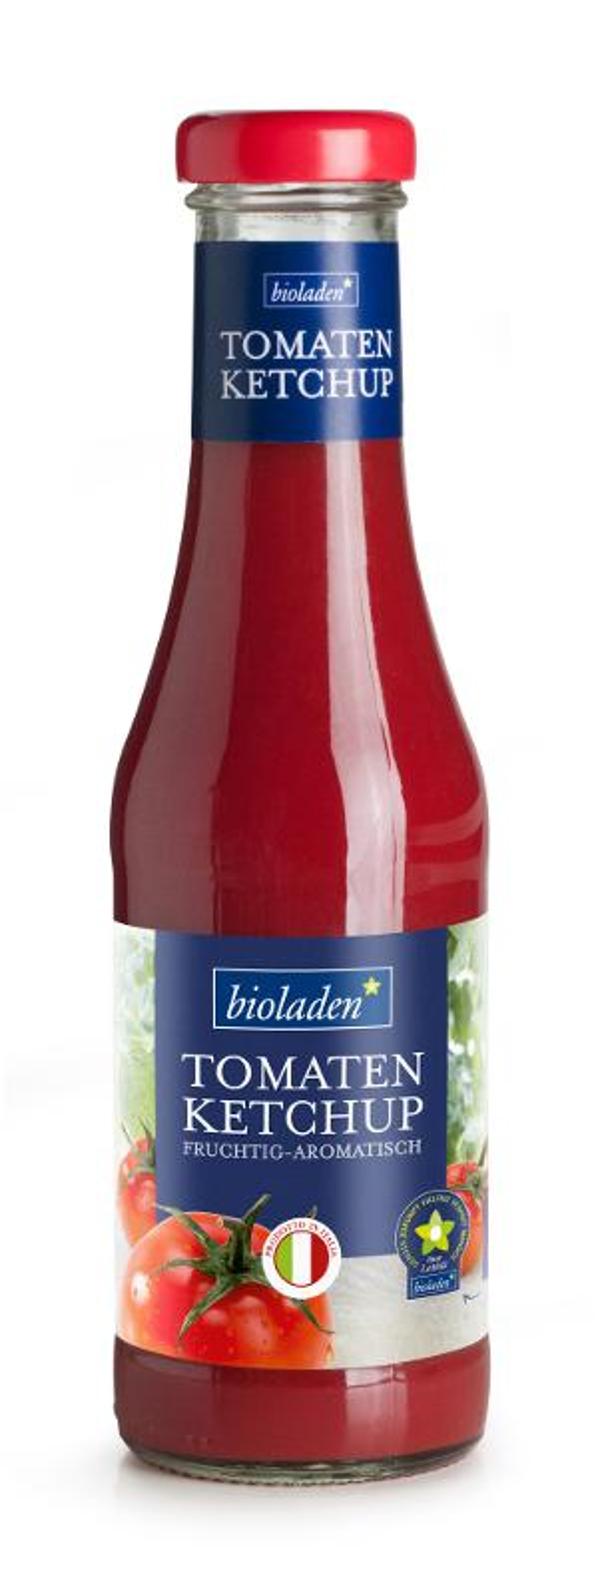 Produktfoto zu Tomatenketchup bioladen